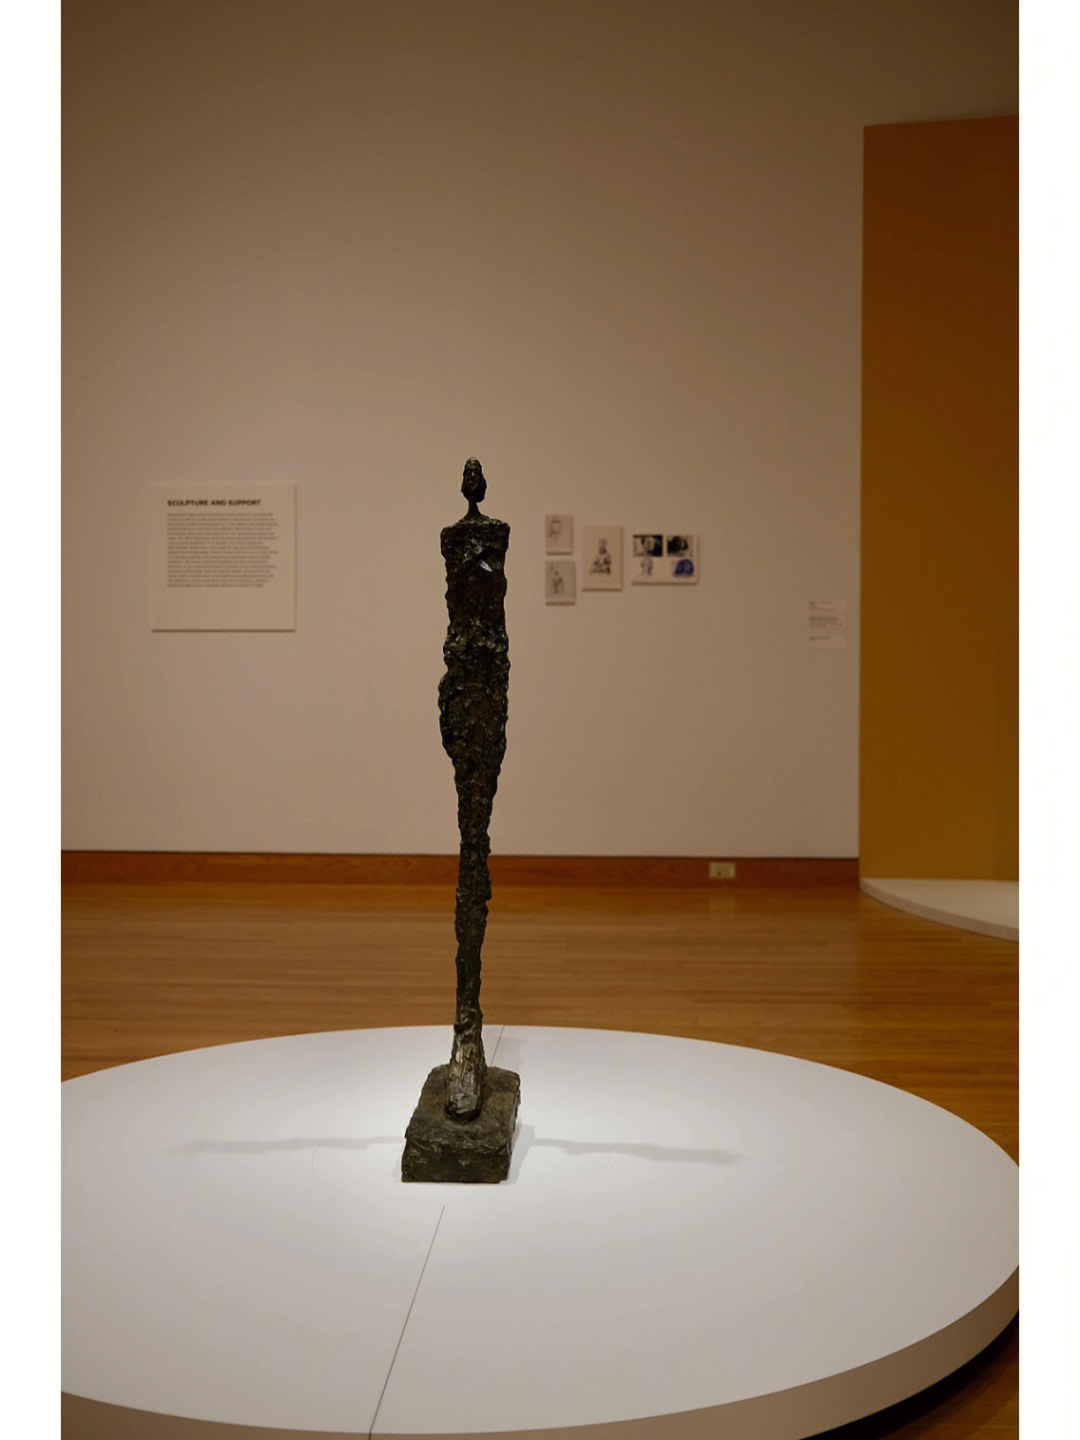 眼前的贾科梅蒂的雕塑作品,让我感受到了黑洞的引力,似乎无形的黑洞就